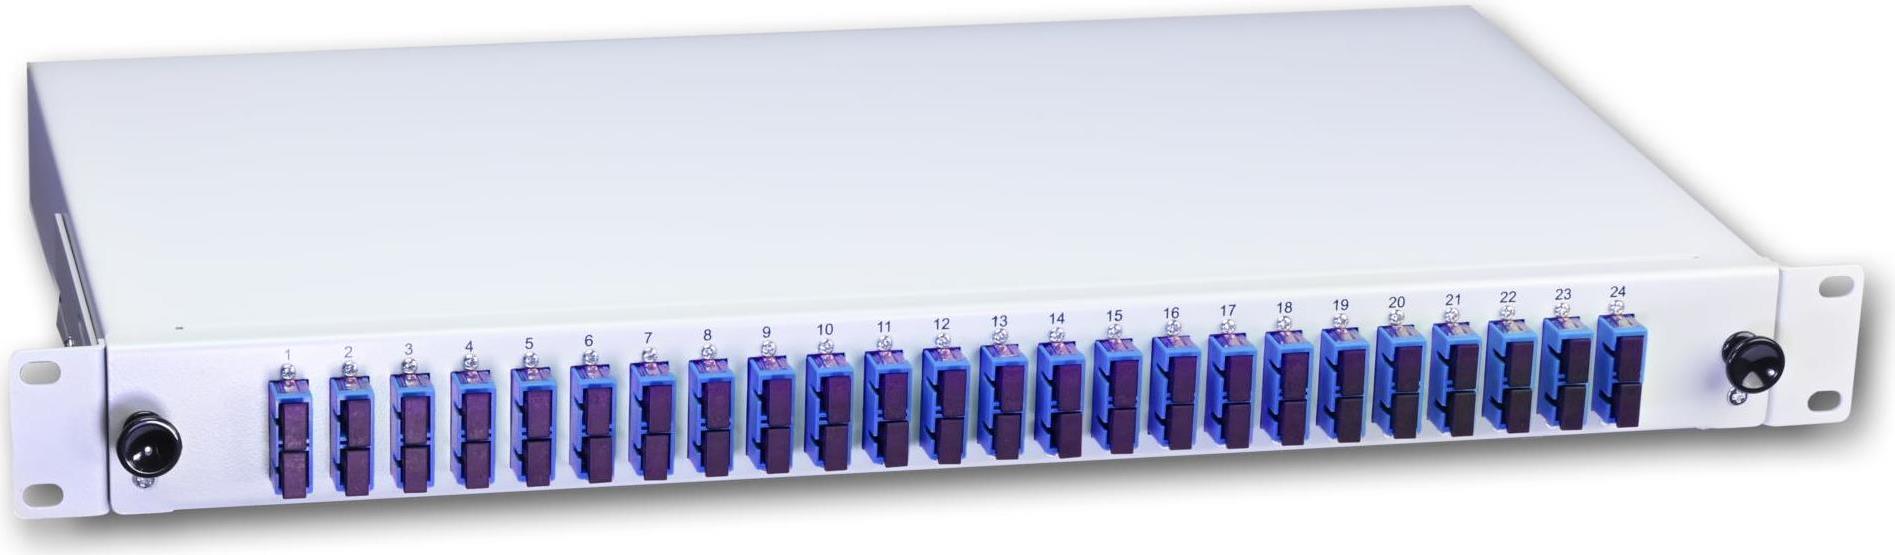 Lightwin LWL Spleissbox, 48 Fasern, 24x DSC Singlemode, 9/125µm OS2 G657.A1 Pigtail Spleißboxen (SPBOX 48E09 OS2 DSC)